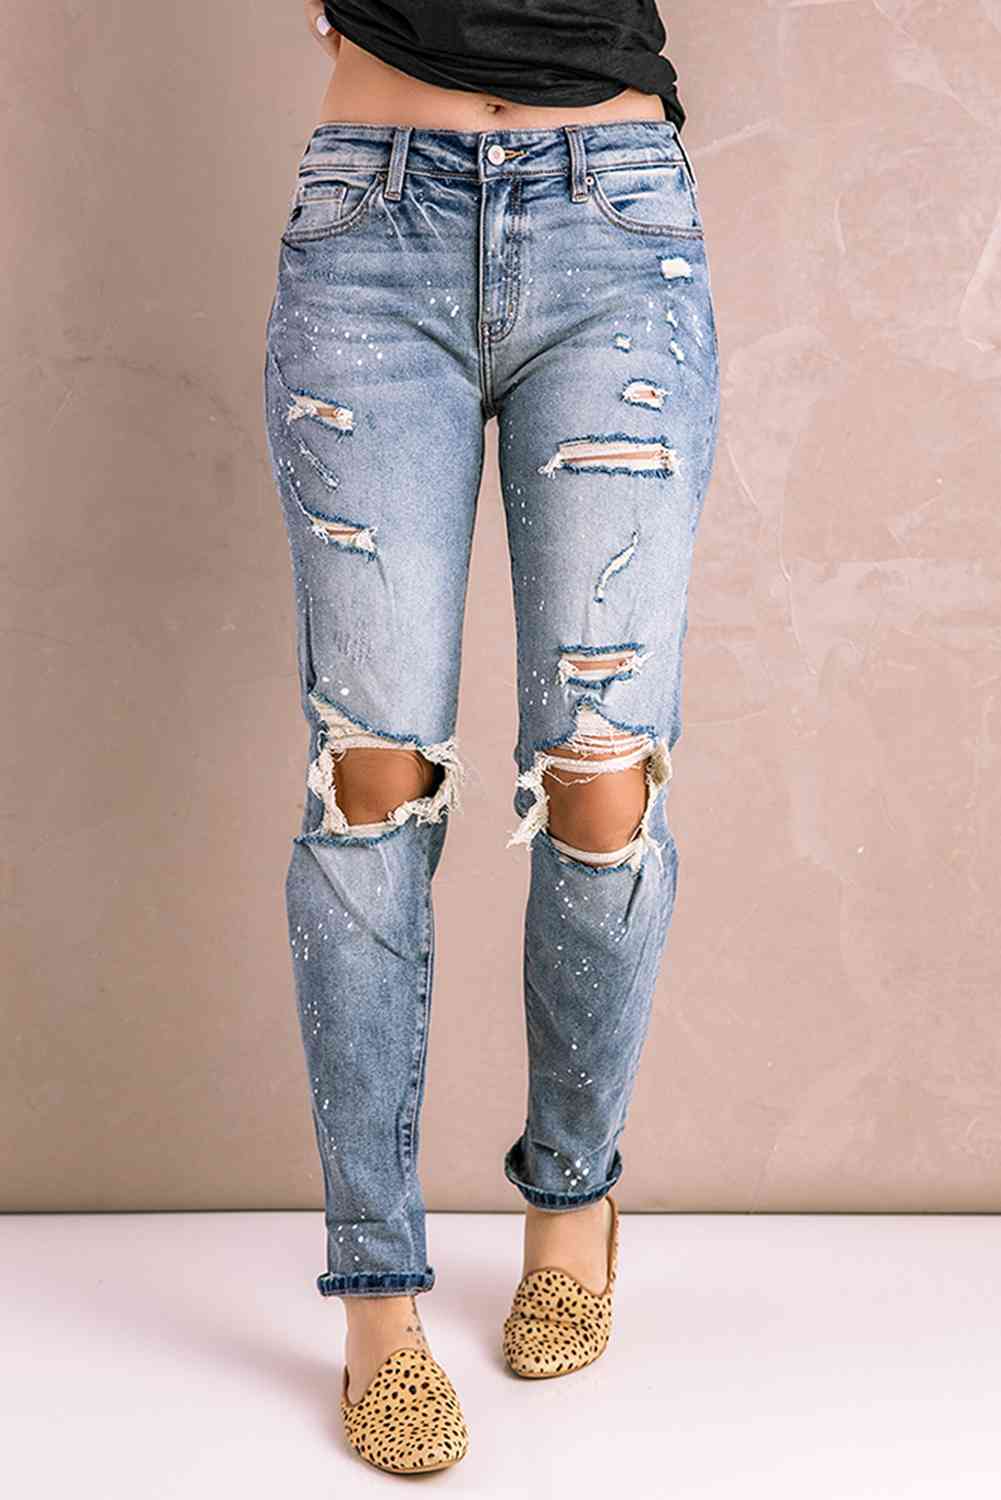 Baeful Splatter Distressed Acid Wash Jeans with Pockets Light Wash XL